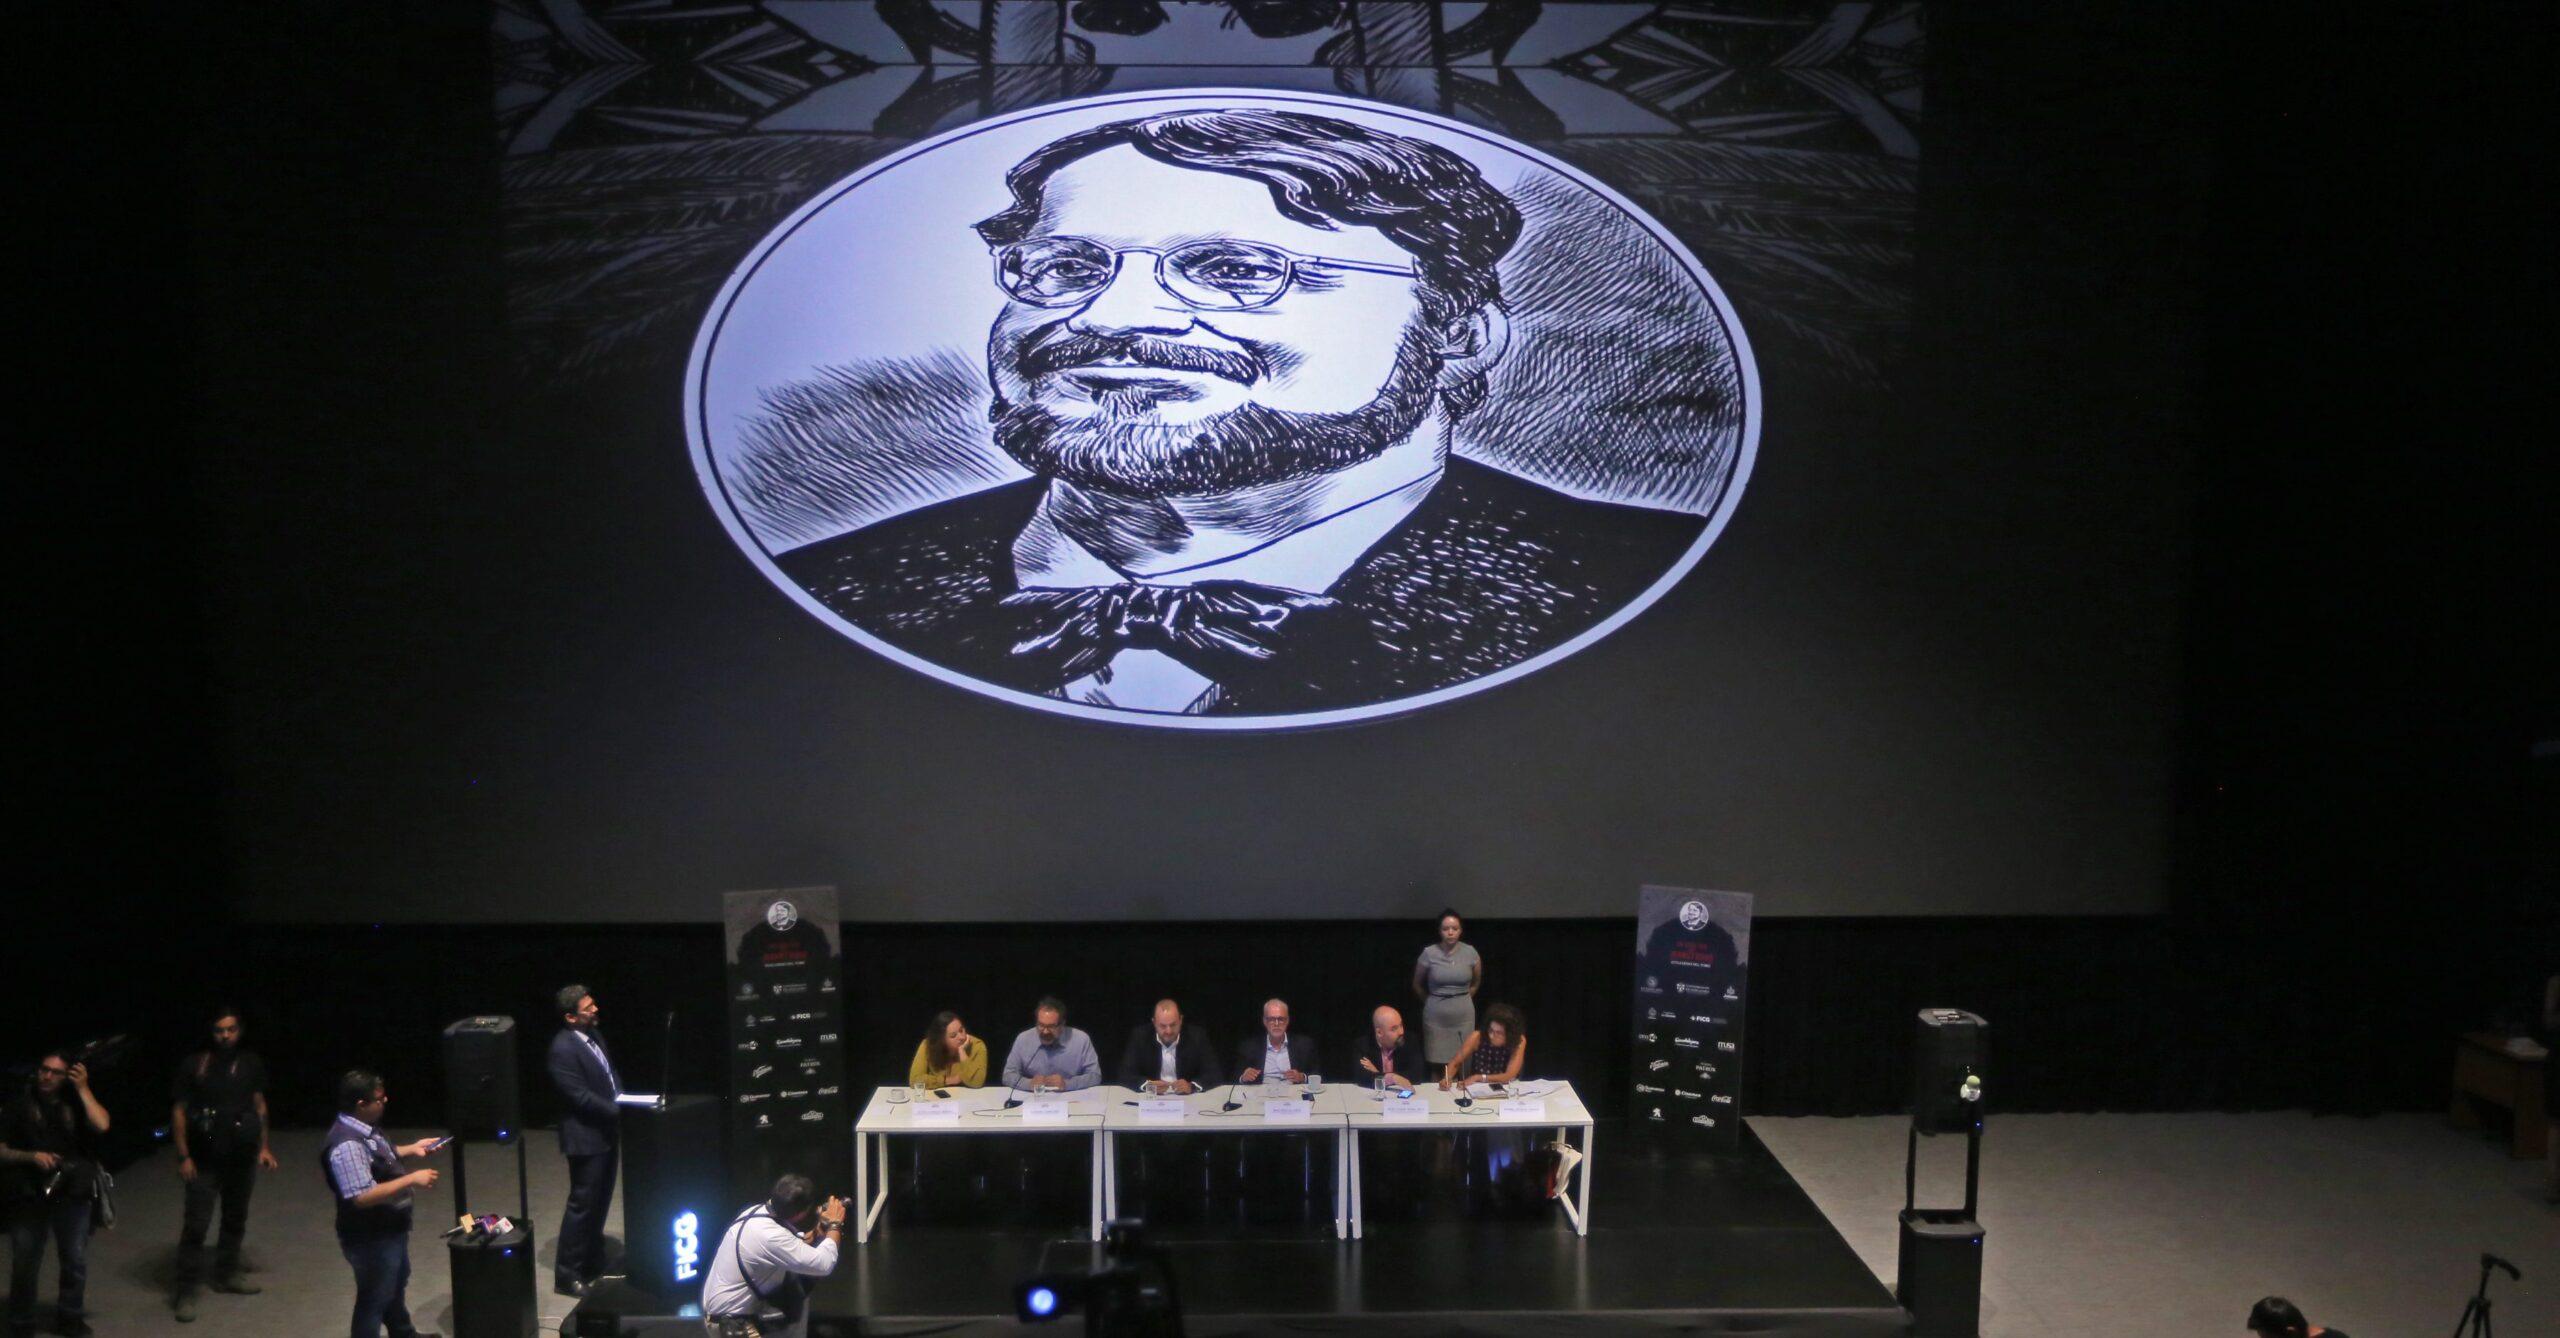 Los monstruos de Guillermo del Toro ‘llegan’ a su nueva casa en Guadalajara